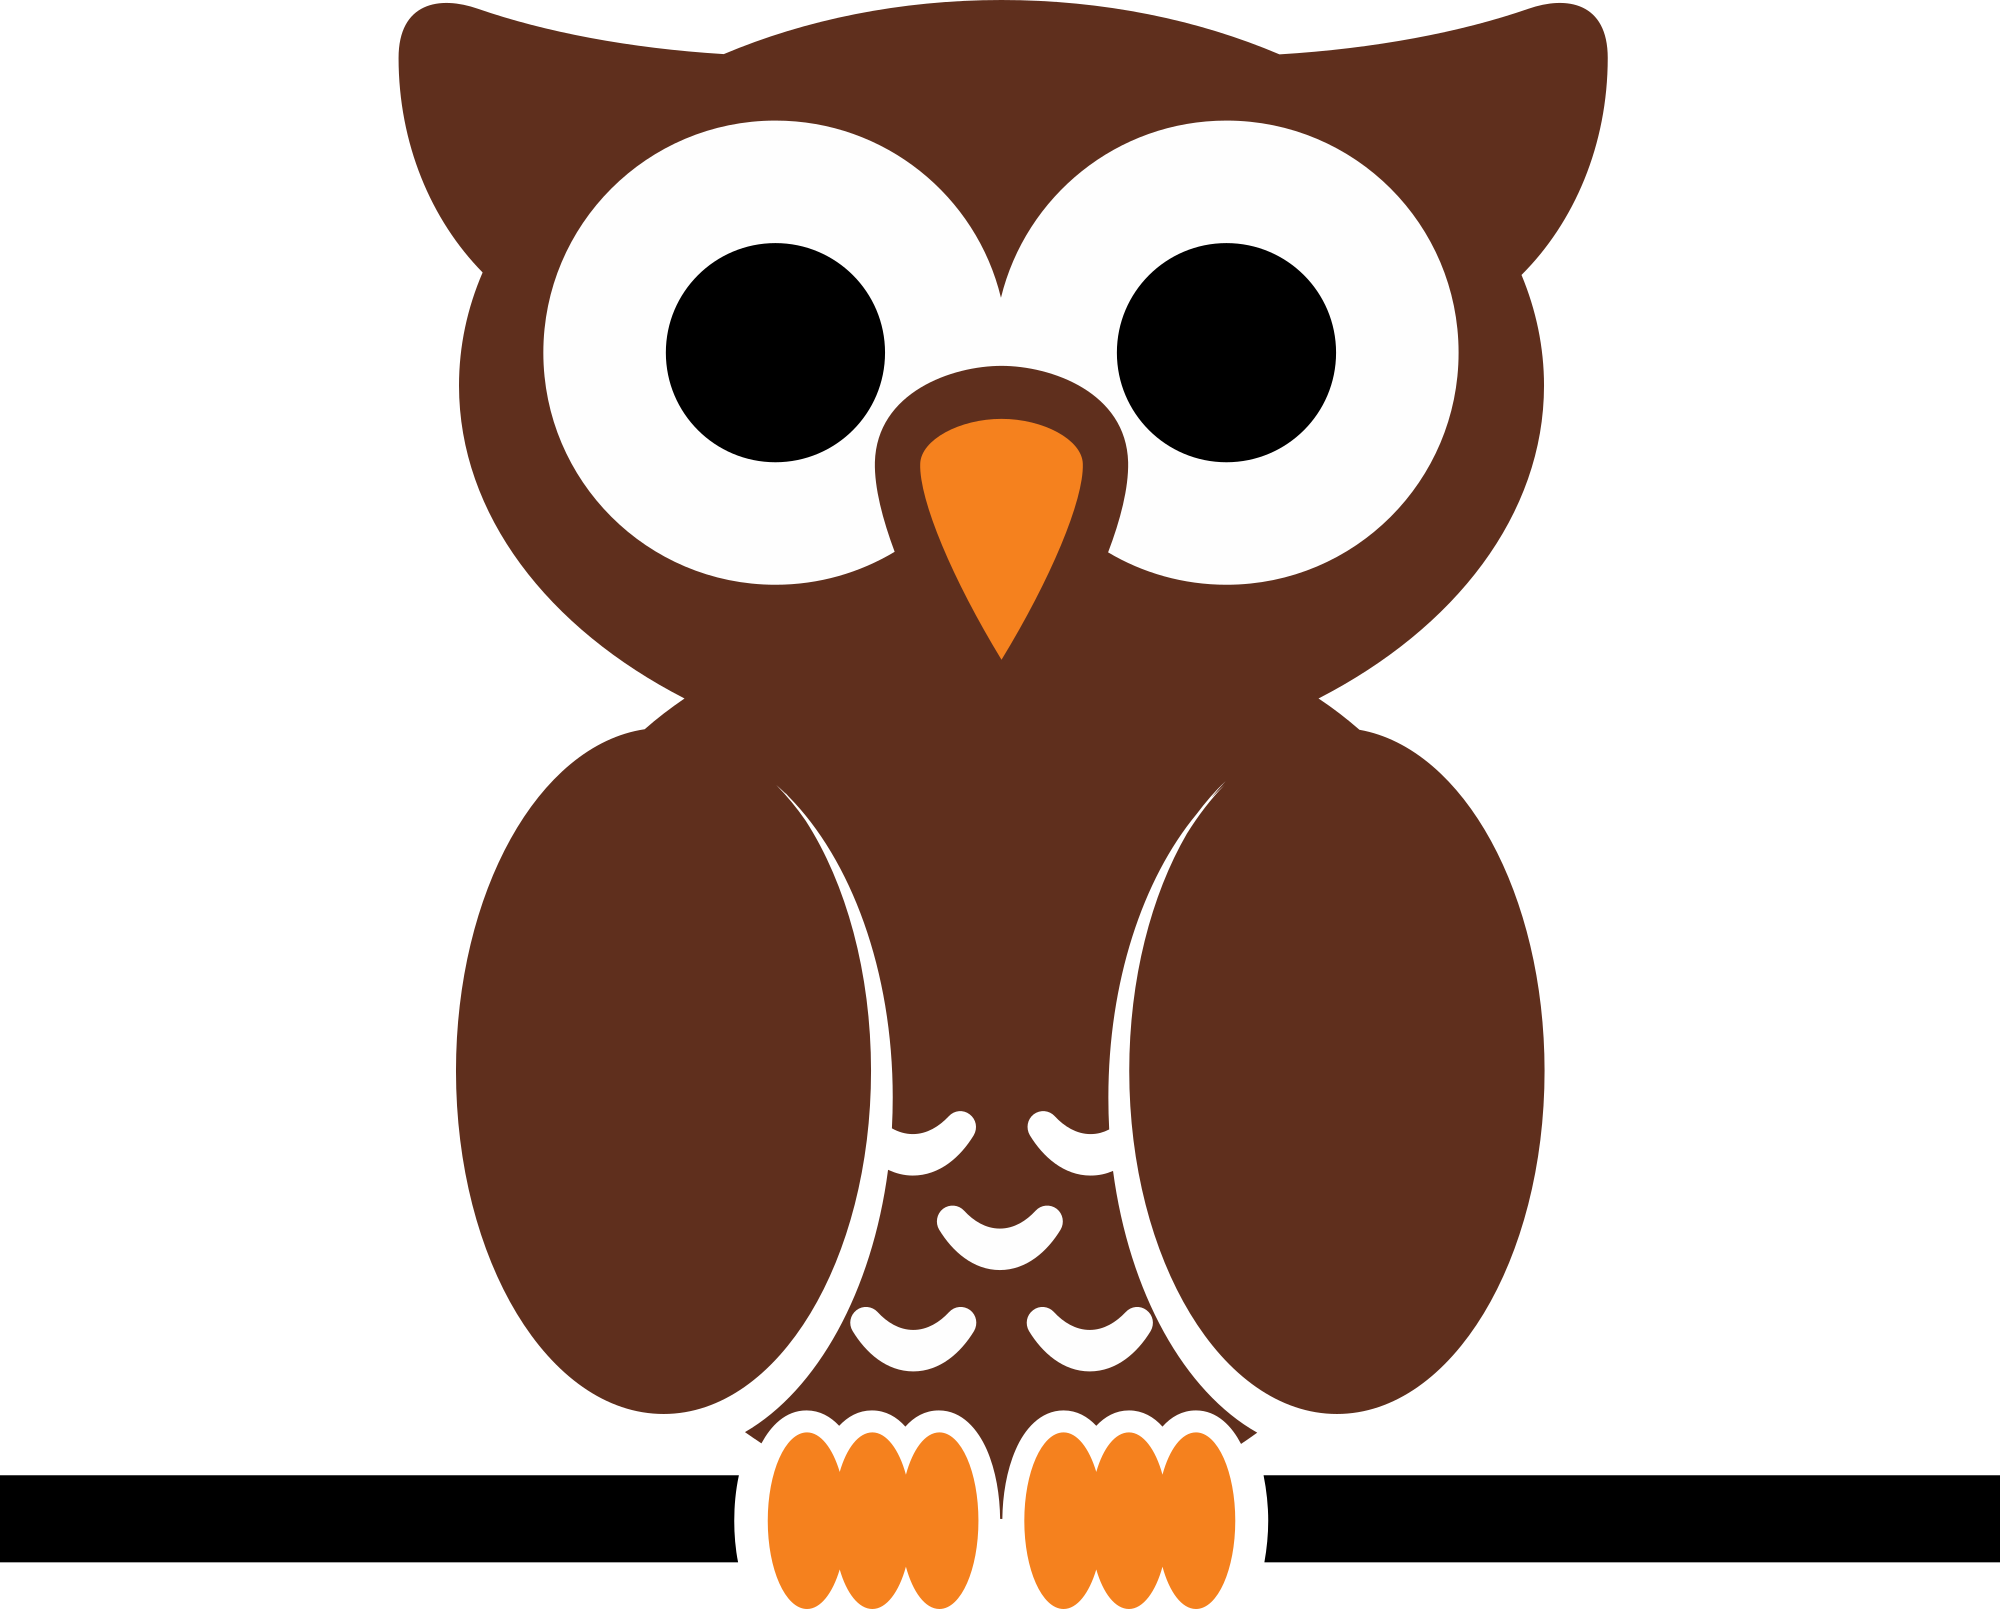 clipart owl shape